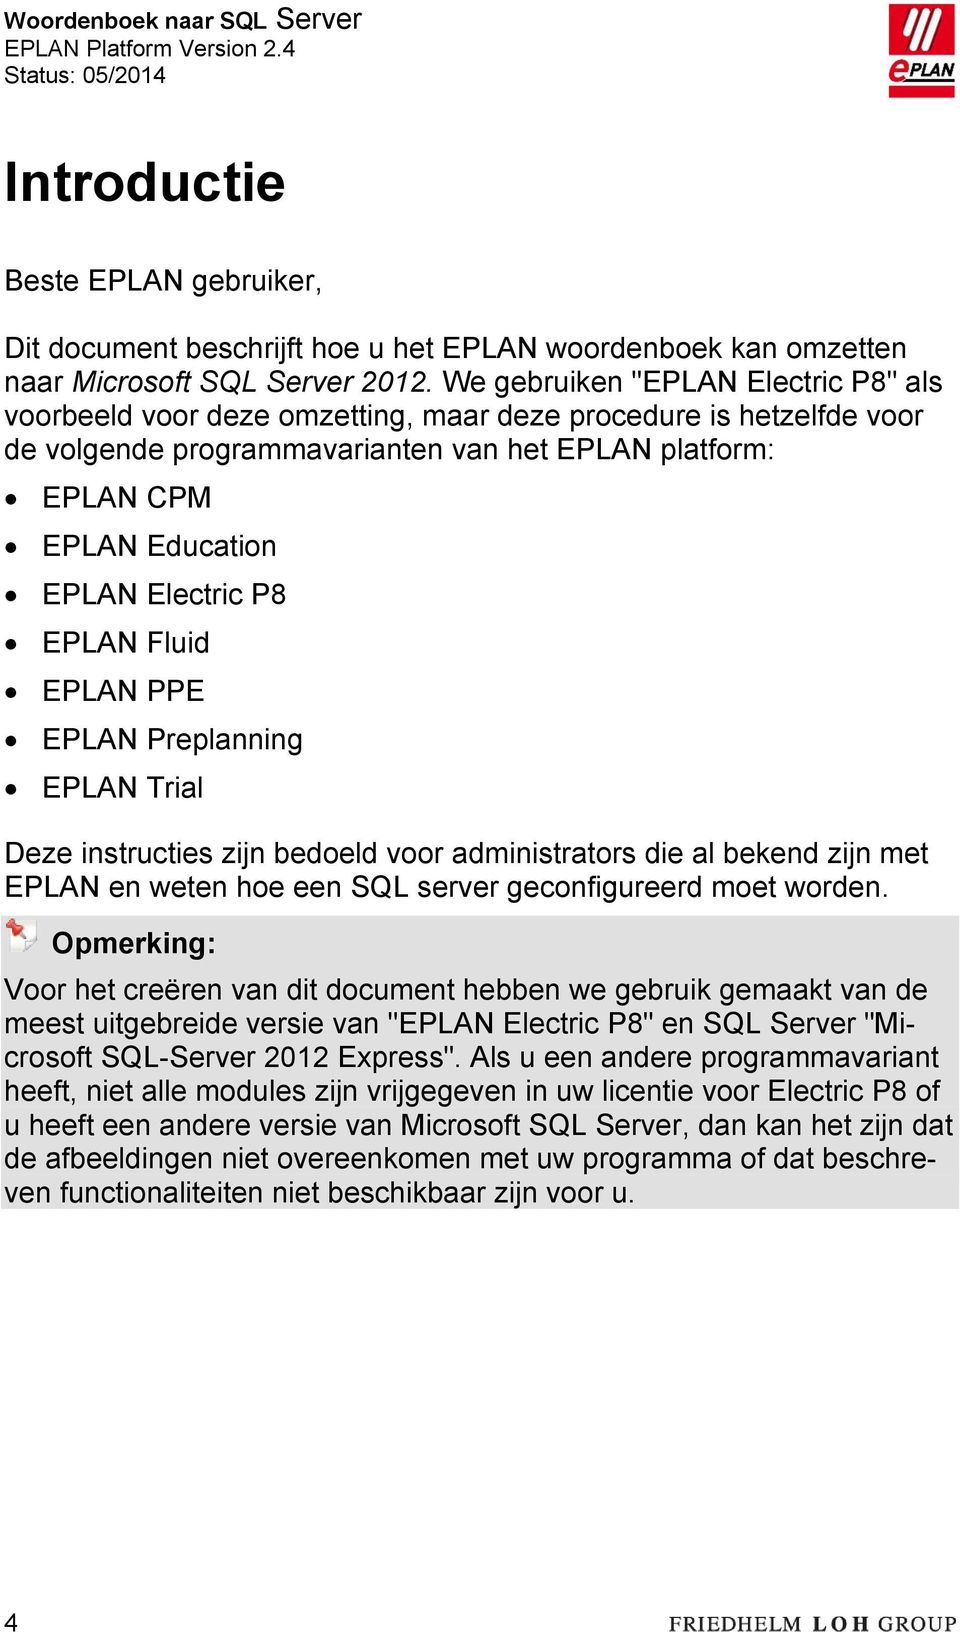 Electric P8 EPLAN Fluid EPLAN PPE EPLAN Preplanning EPLAN Trial Deze instructies zijn bedoeld voor administrators die al bekend zijn met EPLAN en weten hoe een SQL server geconfigureerd moet worden.